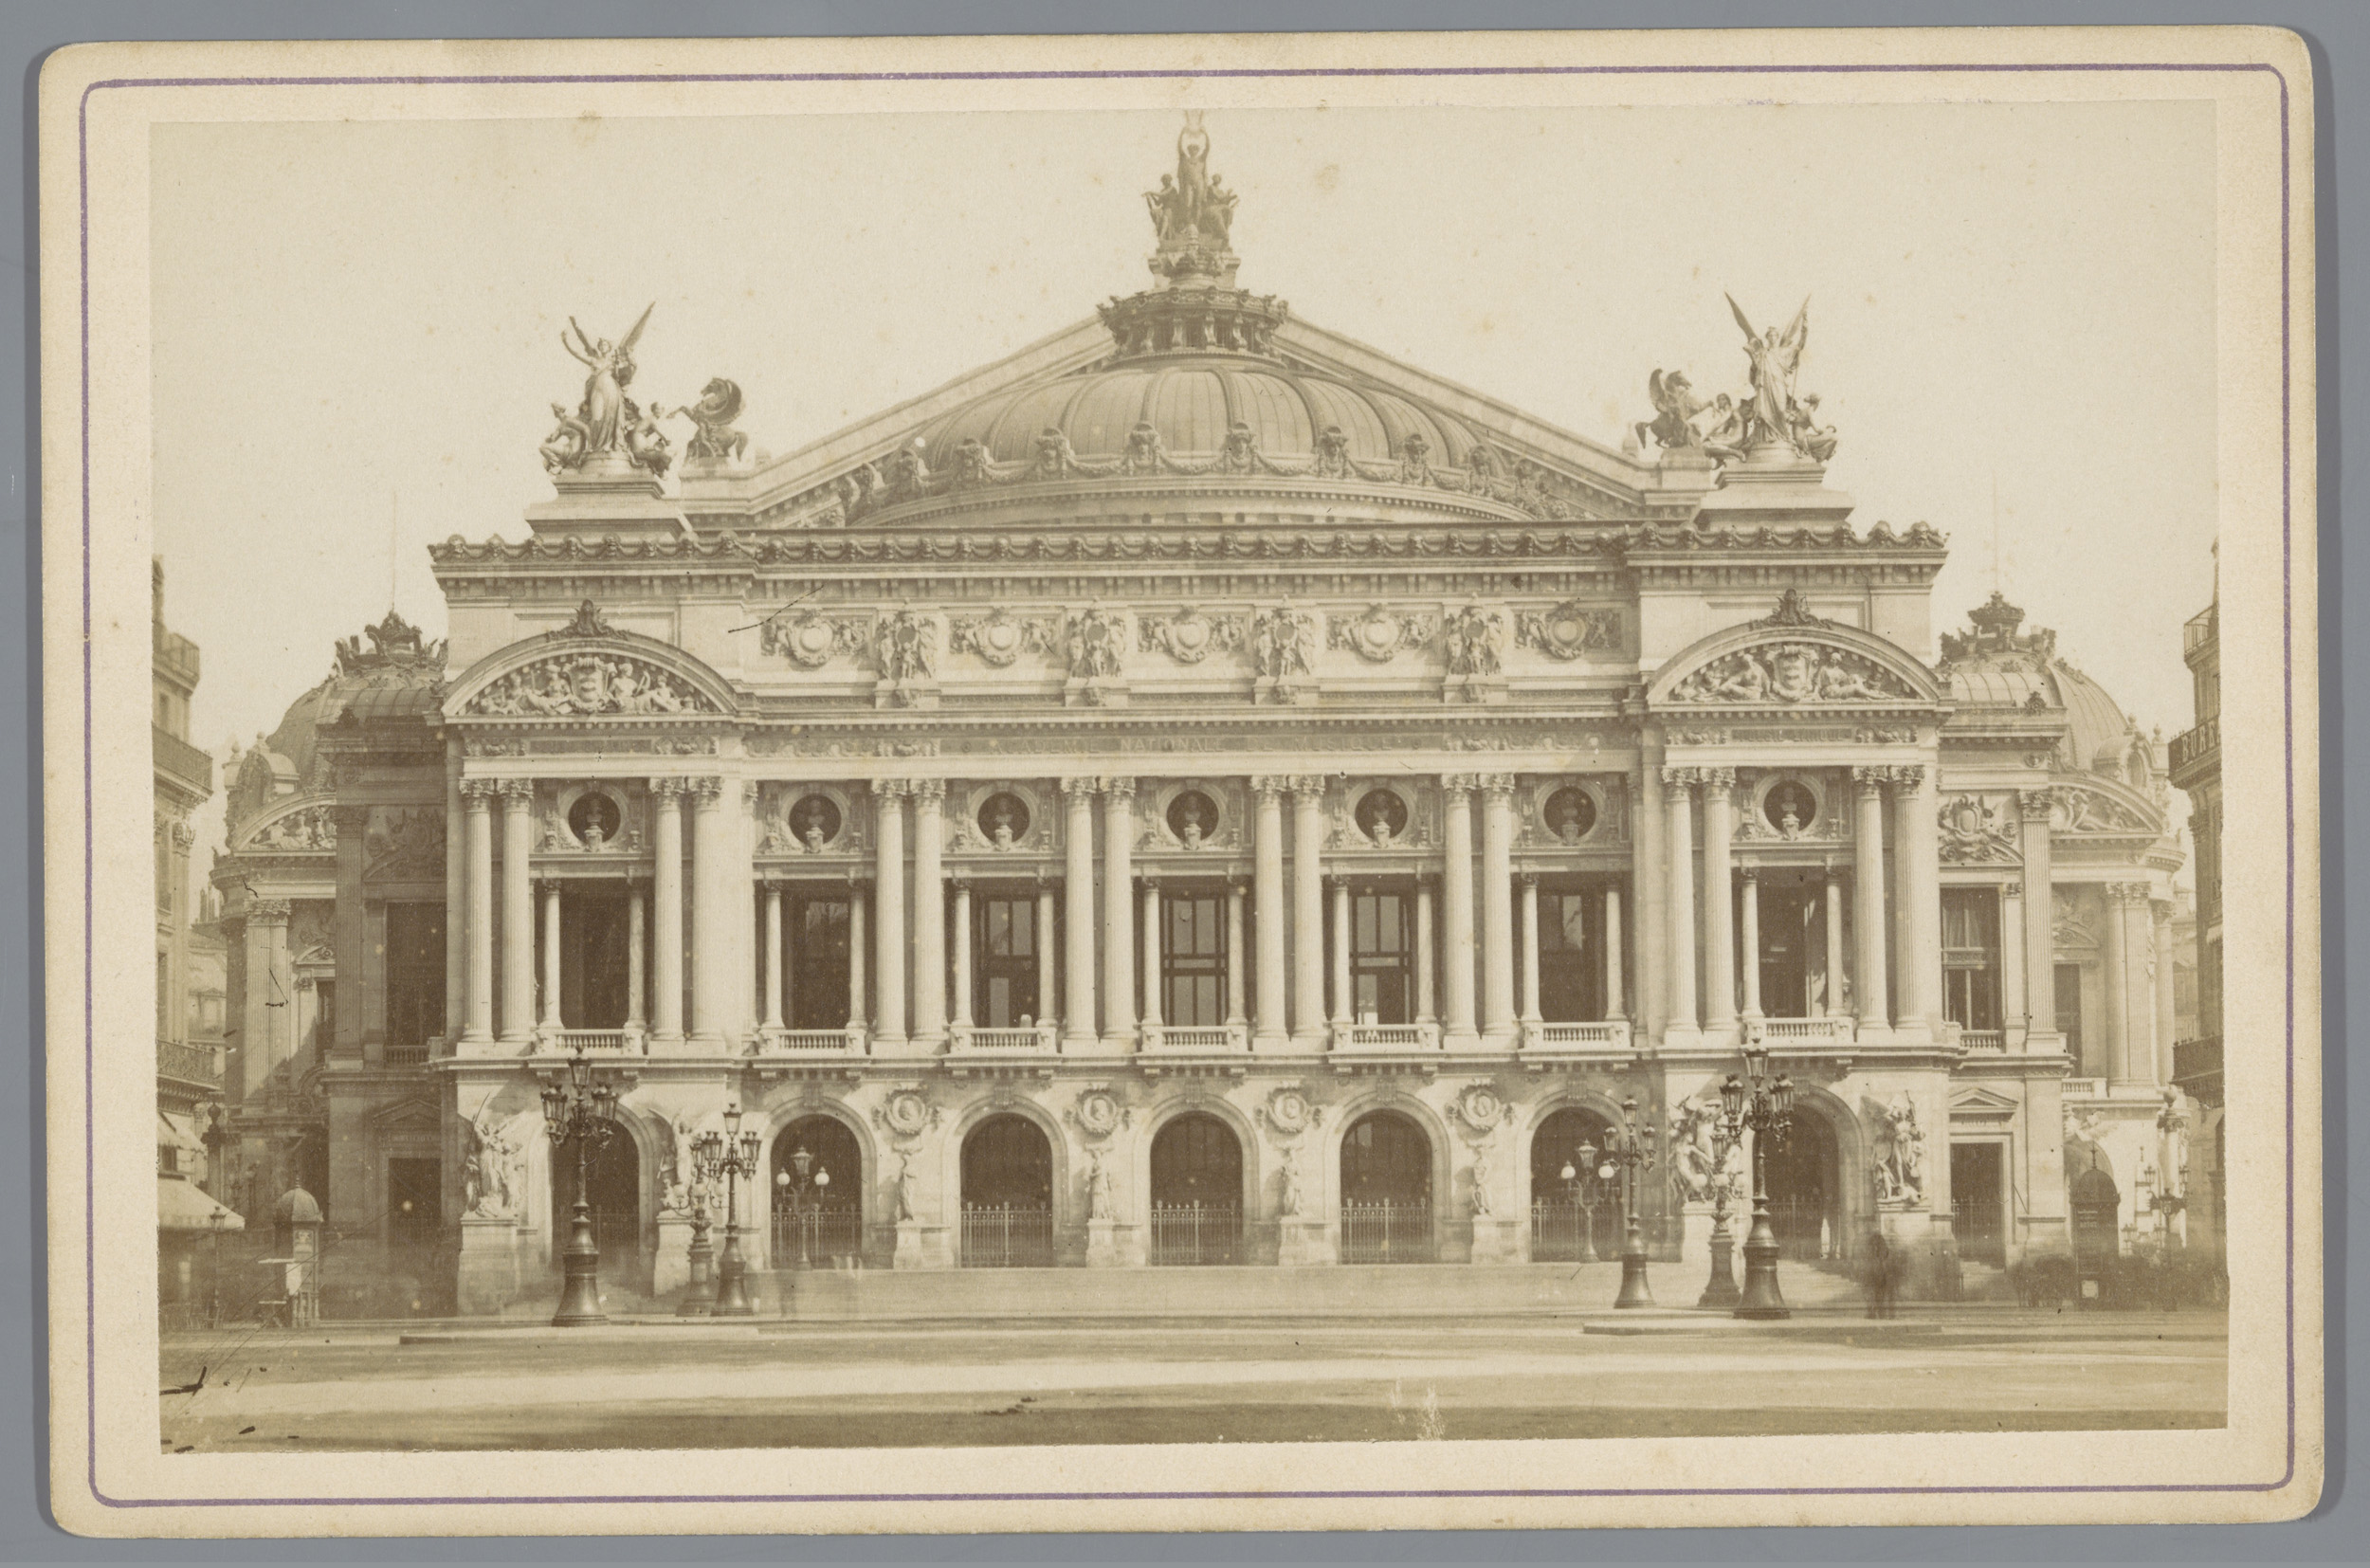 Voorgevel van de Opéra Garnier here Paris